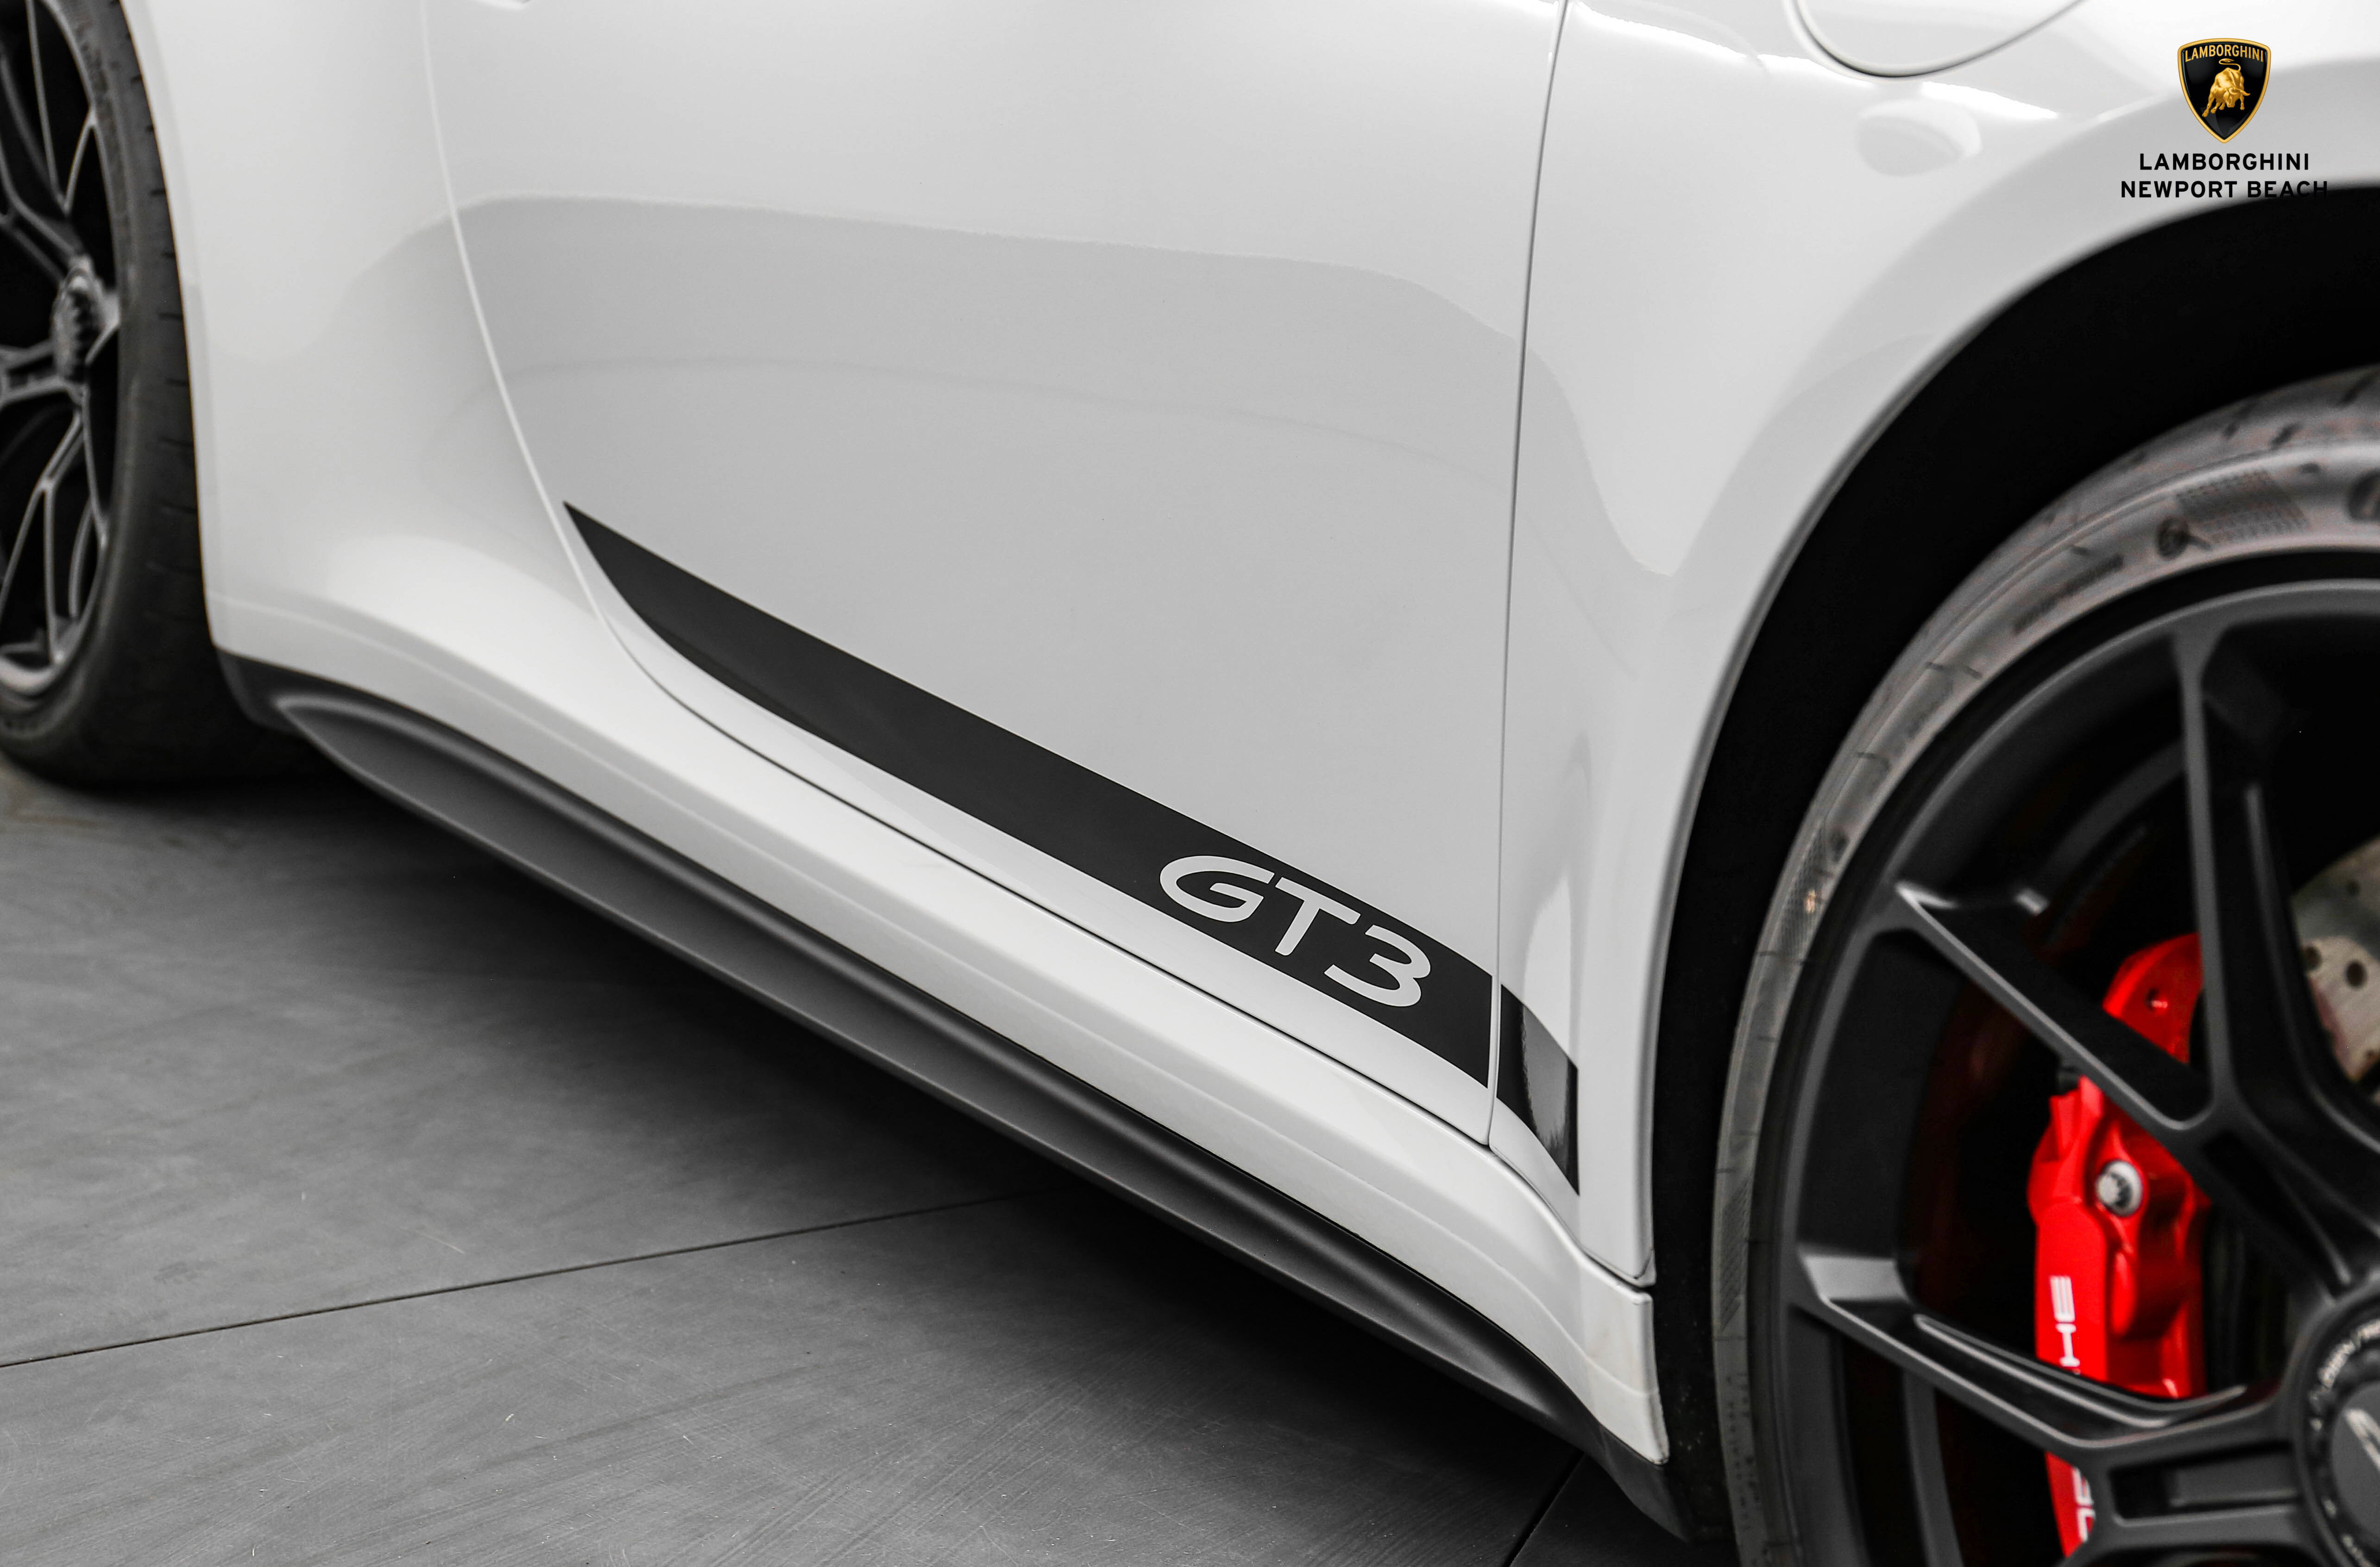 Porsche 911 GT3 - Bugatti Newport Beach - United States - For sale on ...